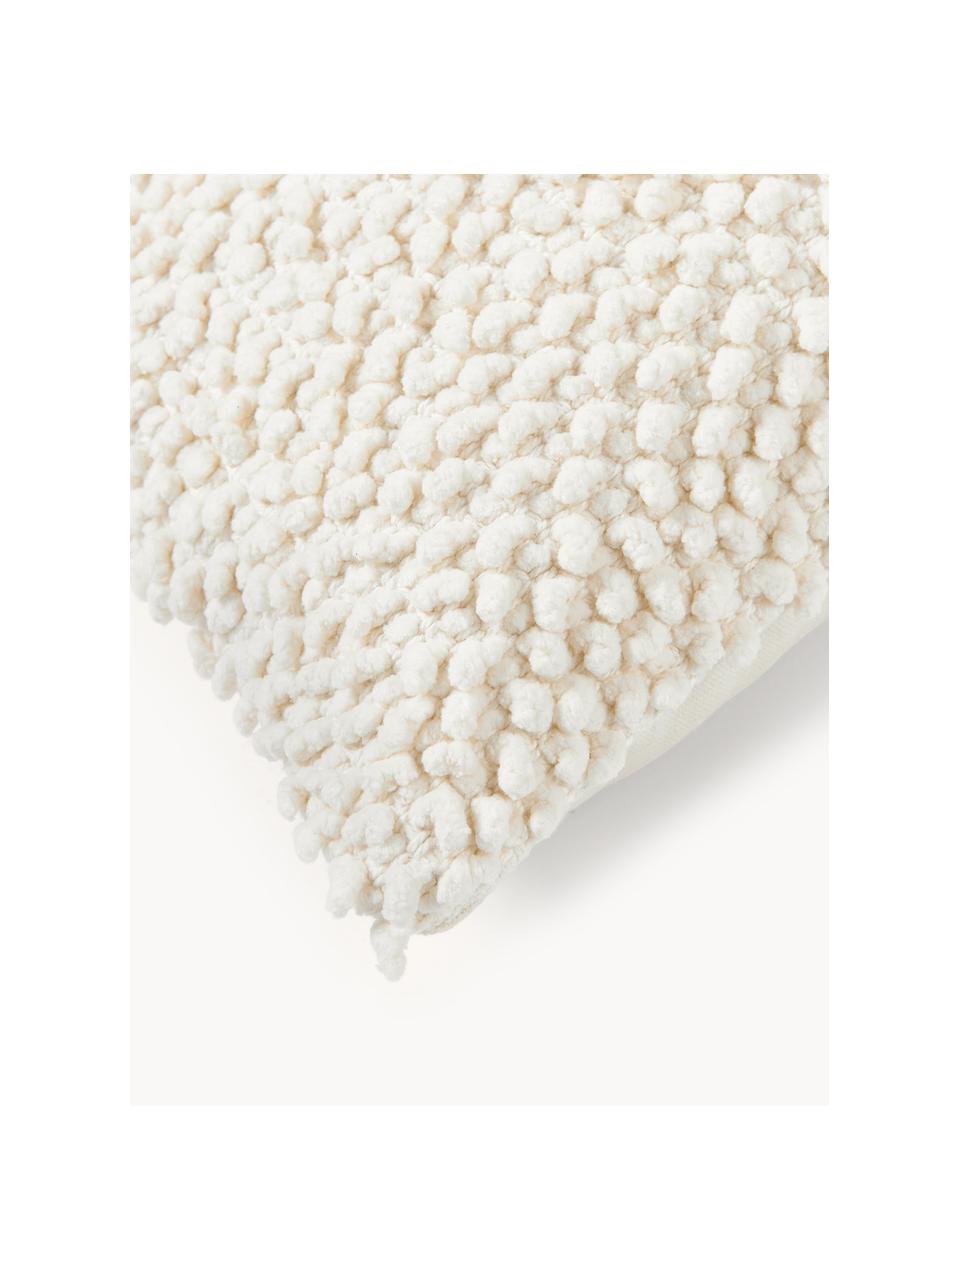 Kissenhülle Indi mit strukturierter Oberfläche, 100% Baumwolle, Off White, B 30 x L 50 cm